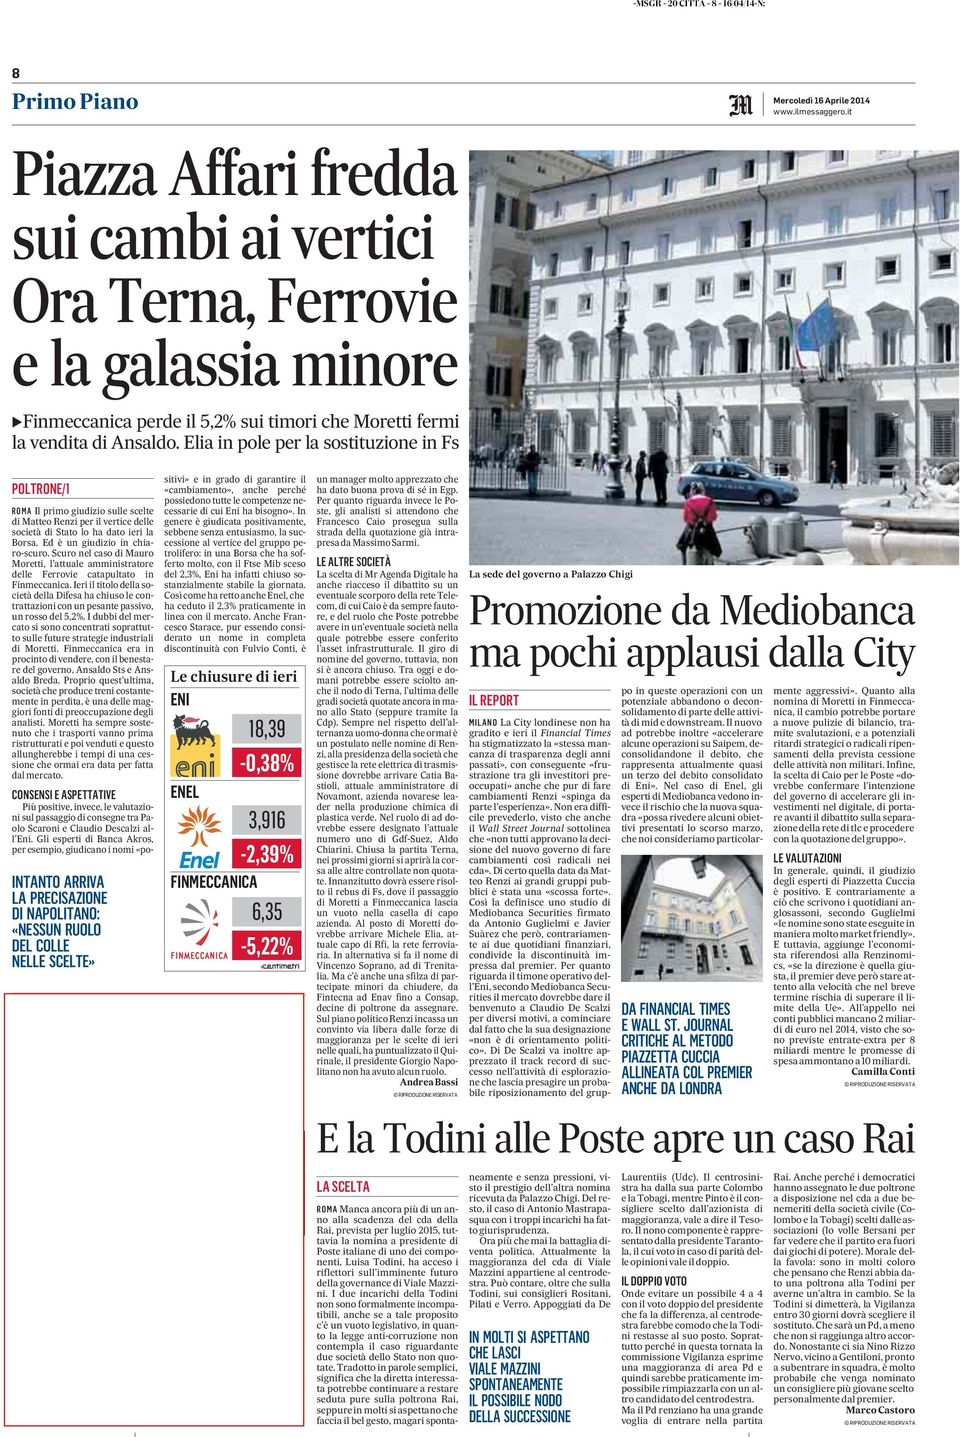 Elia in pole per la sostituzione in Fs Mercoledì 16 Aprile 2014 POLTRONE/1 ROMA Il primo giudizio sulle scelte di Matteo Renzi per il vertice delle società di Stato lo ha dato ieri la Borsa.